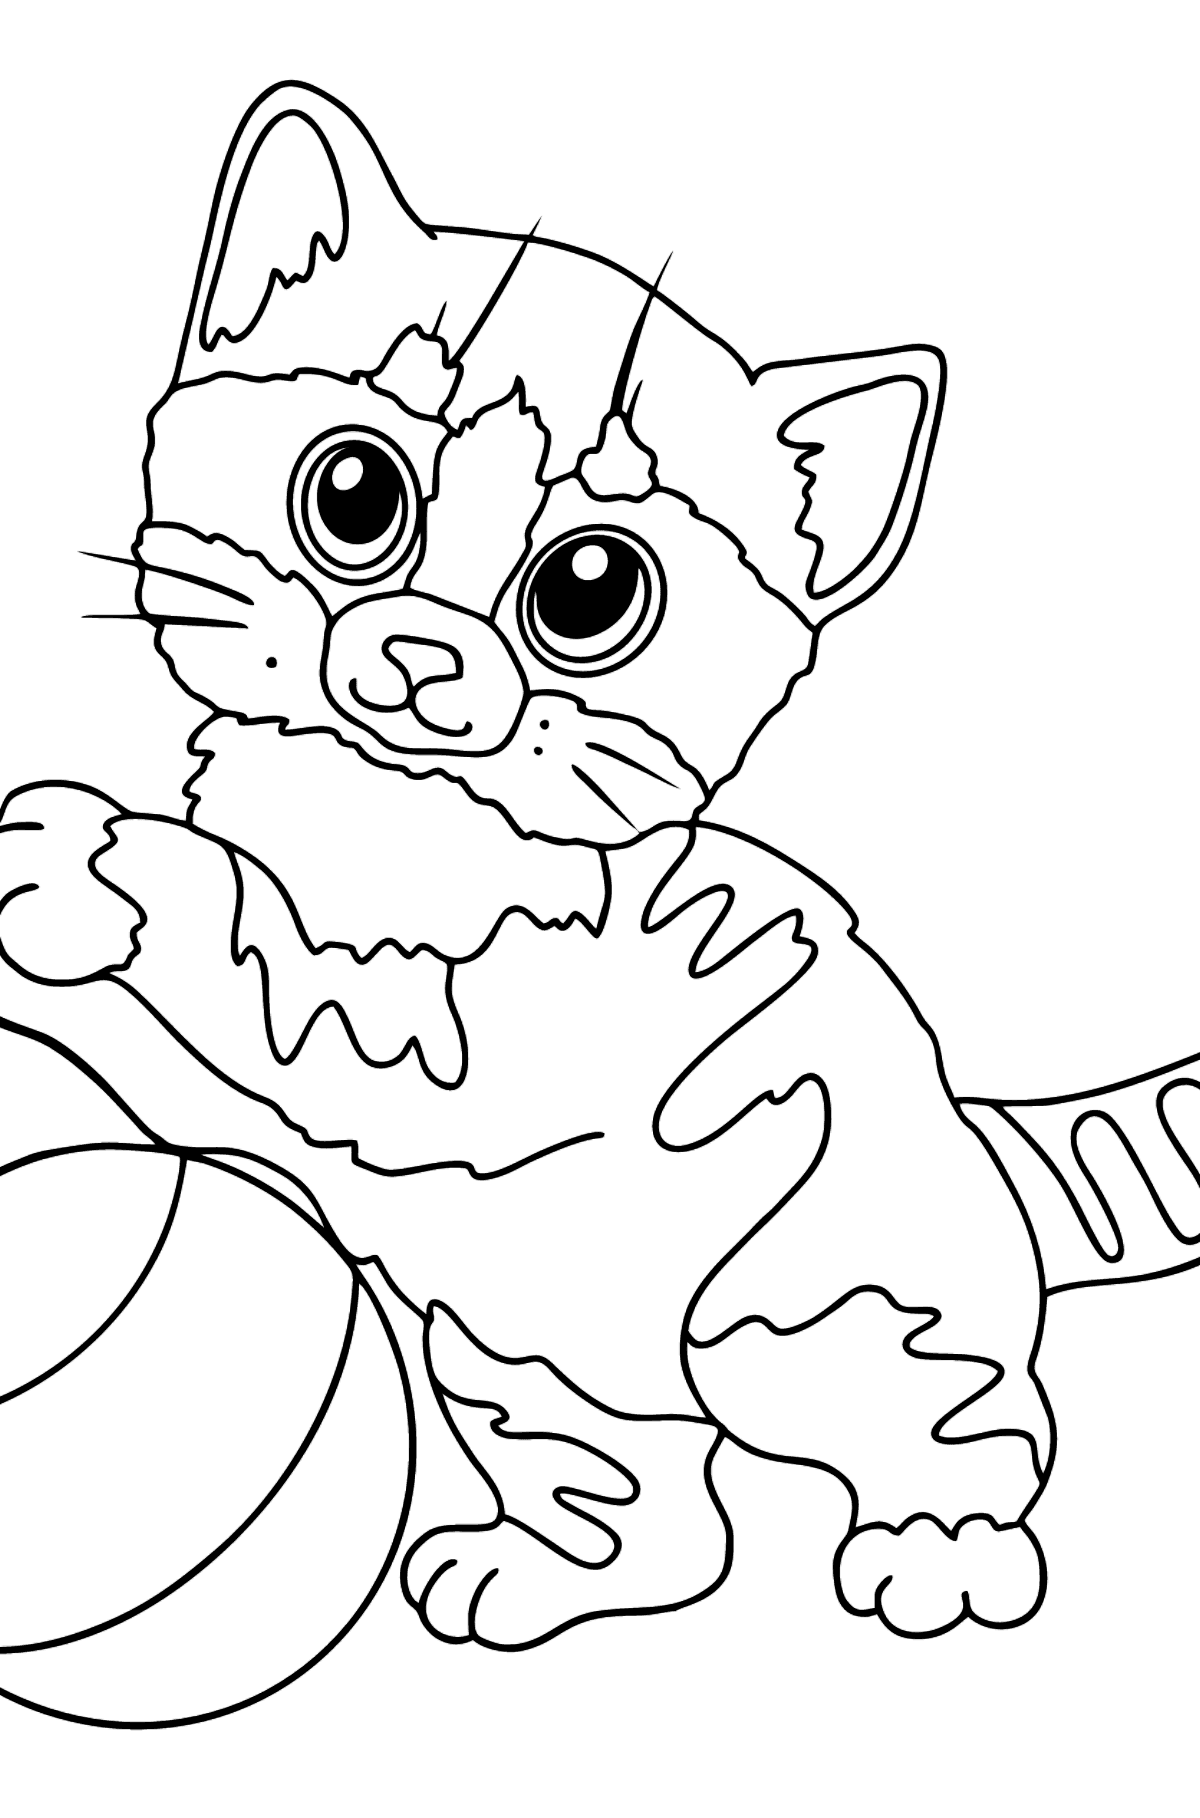 Gattino divertente di Disegno da colorare - Disegni da colorare per bambini